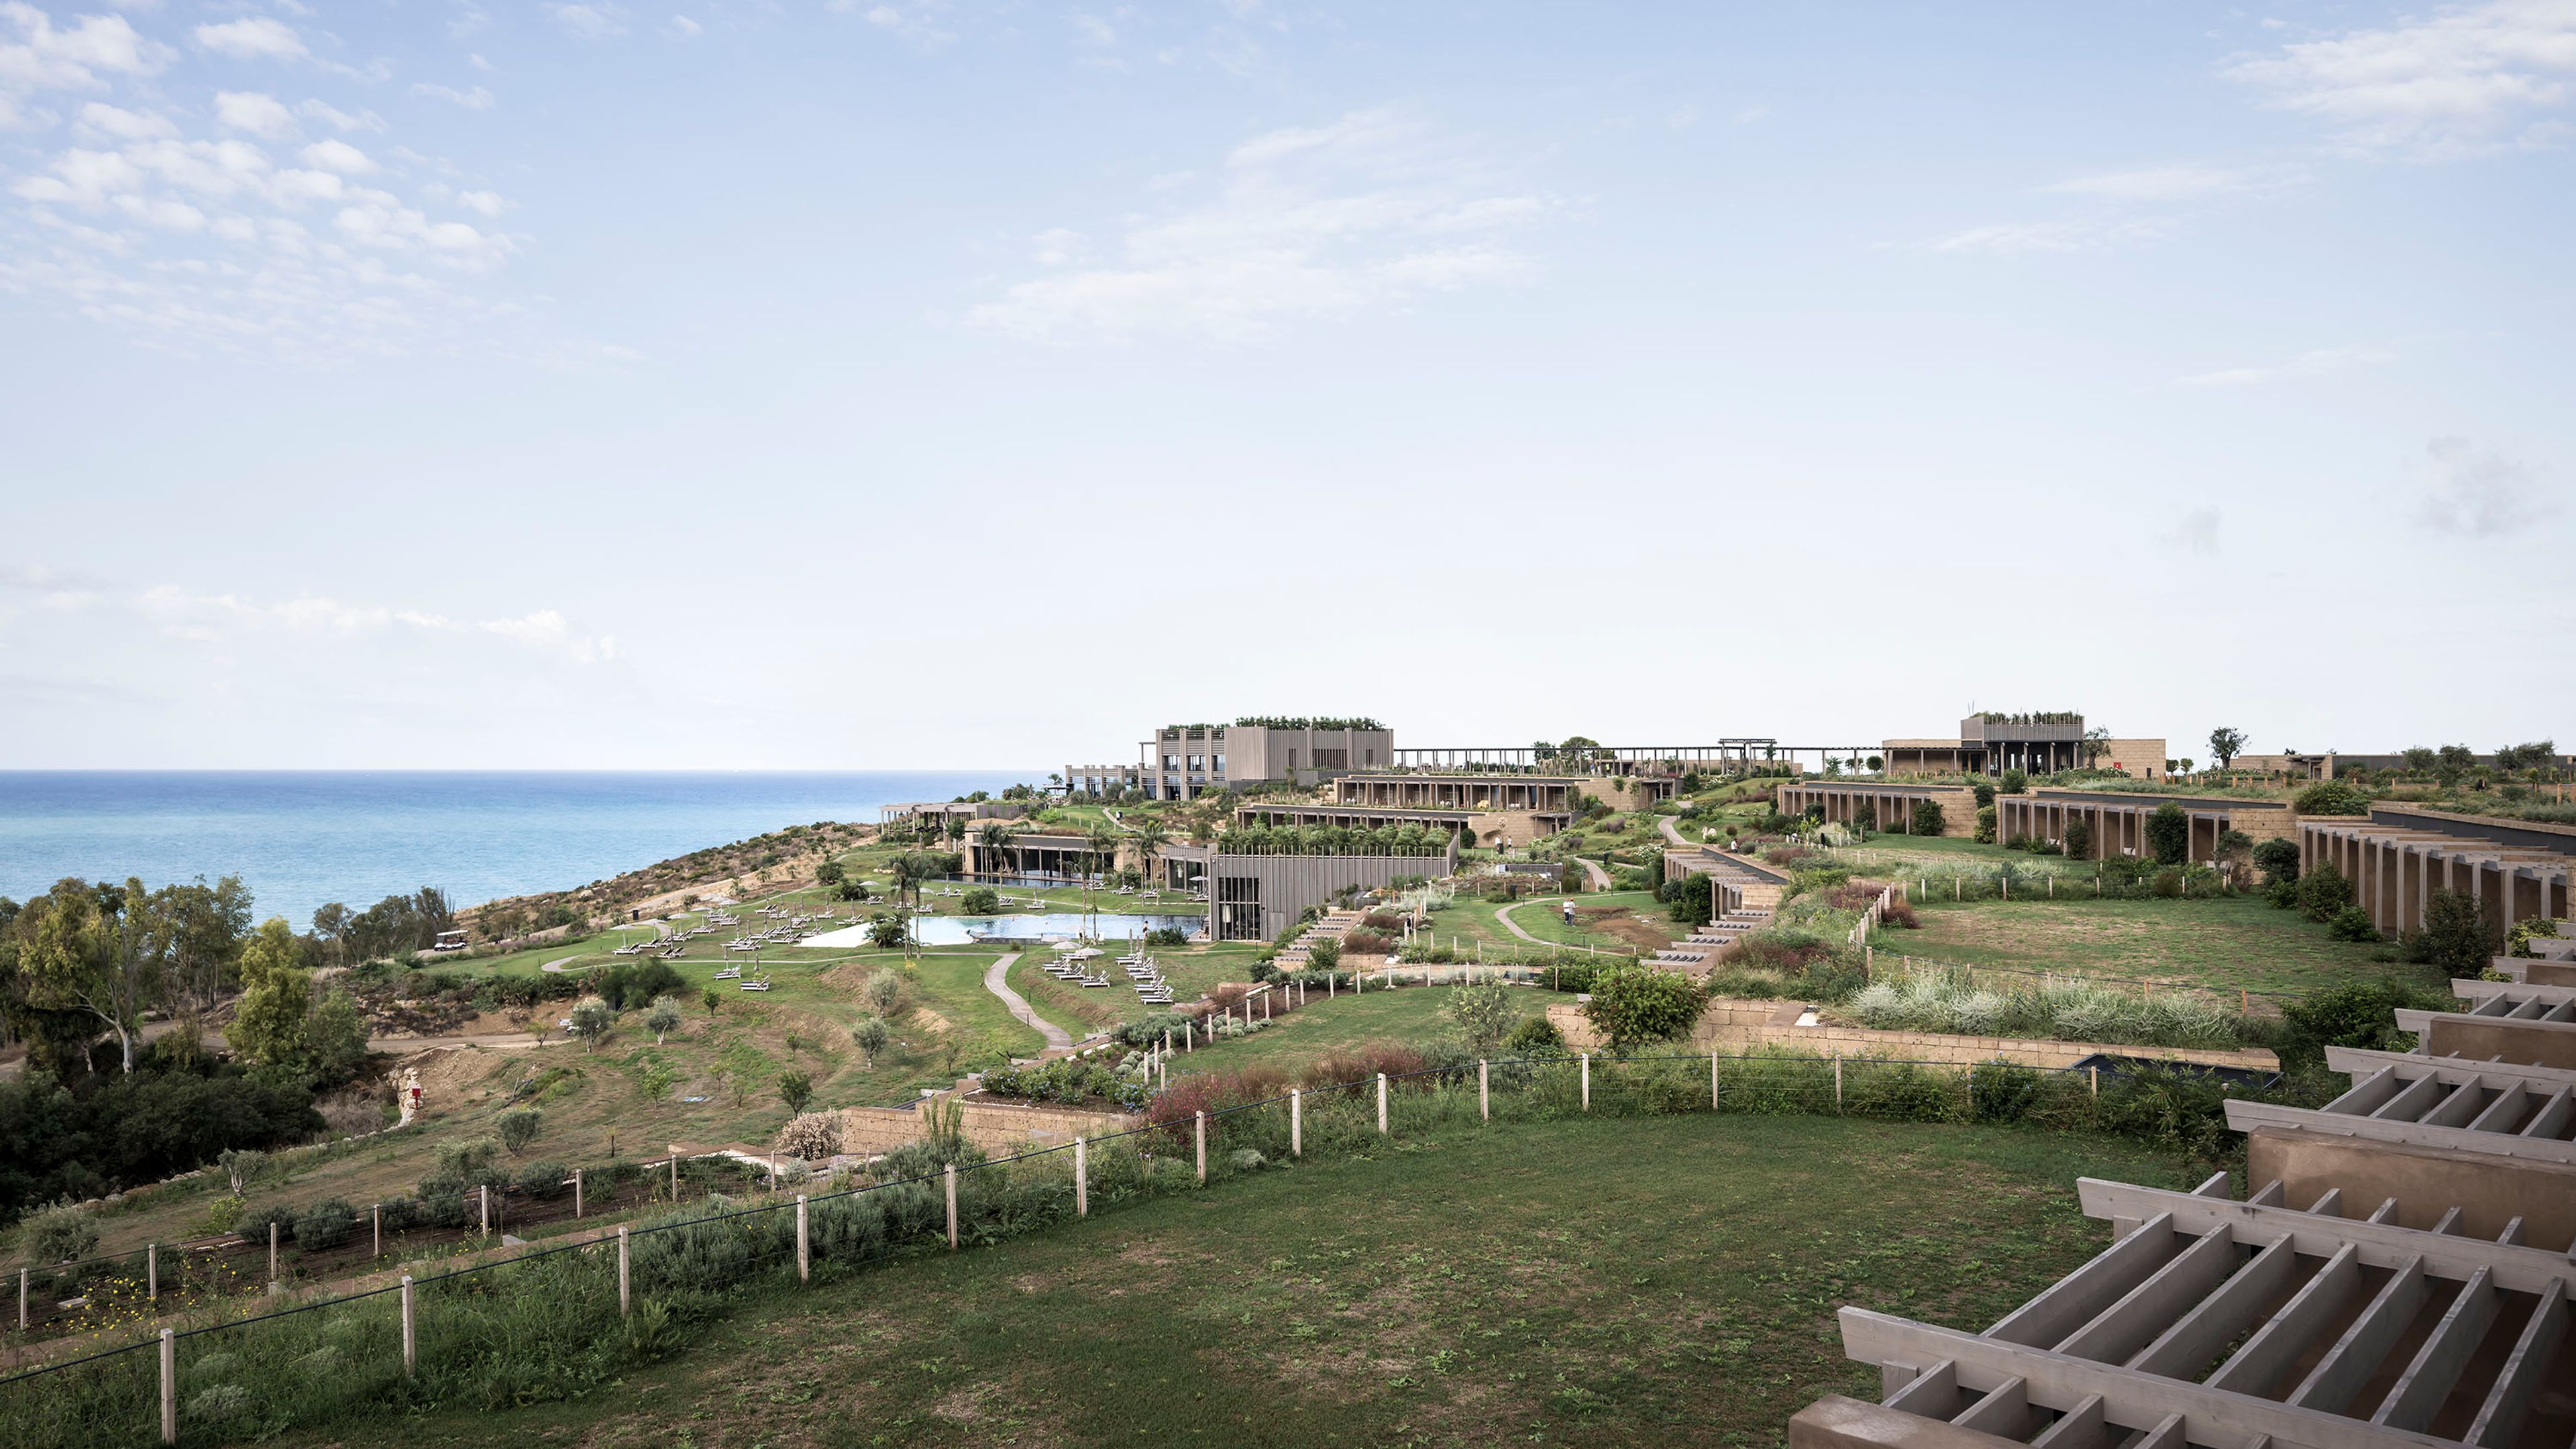 ADLER Spa Resort Sicilia